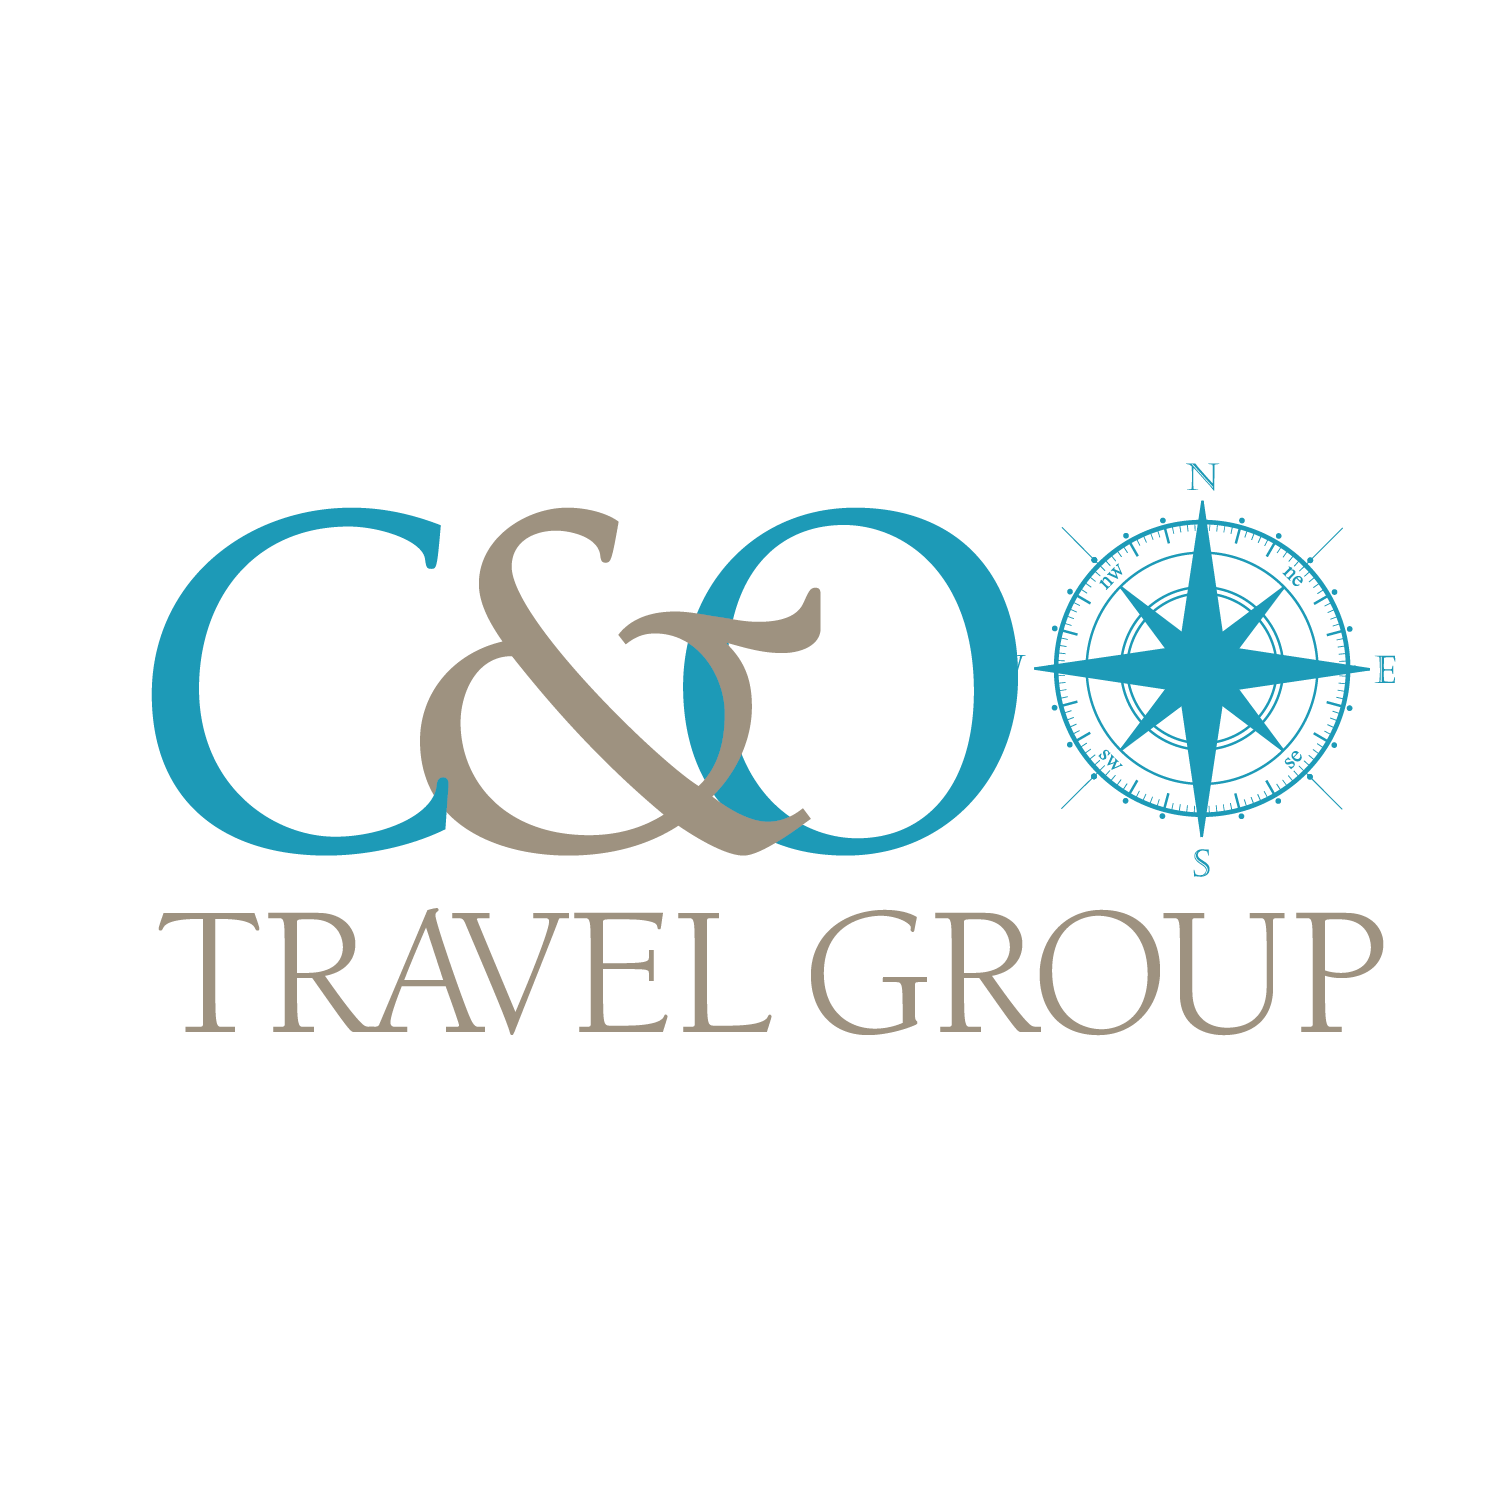 C&O Travel Group